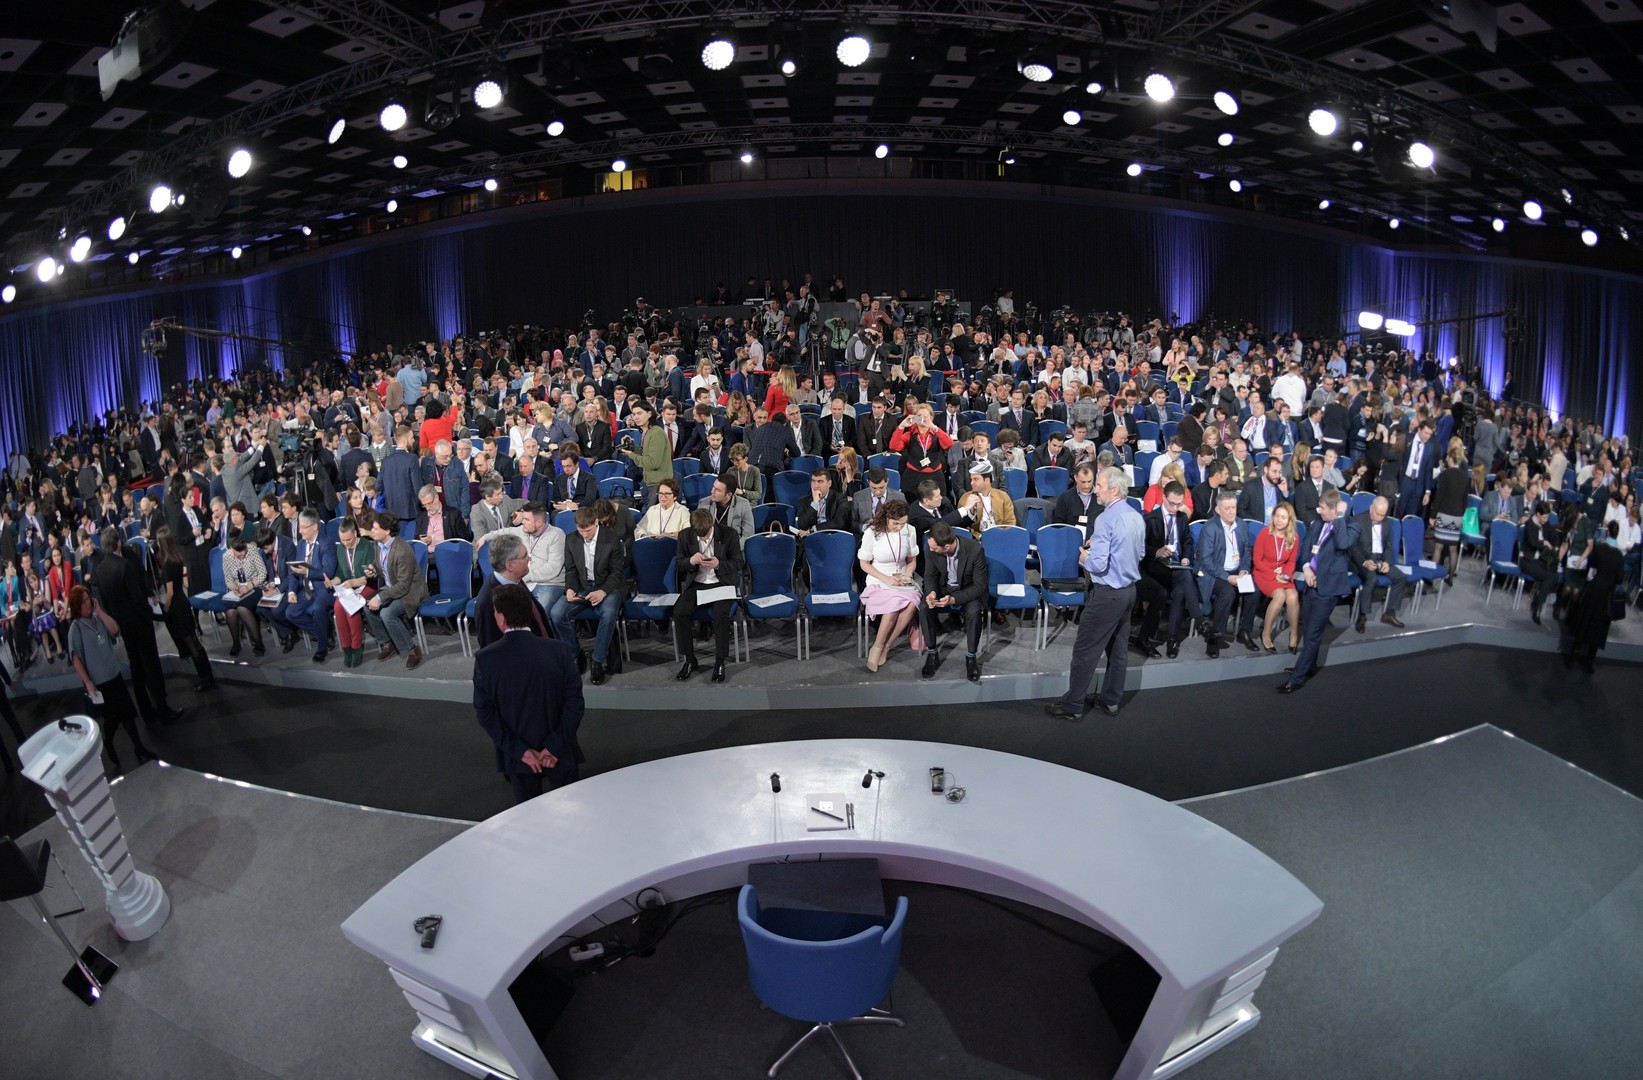 La conférence de presse de Vladimir Poutine en chiffres et images